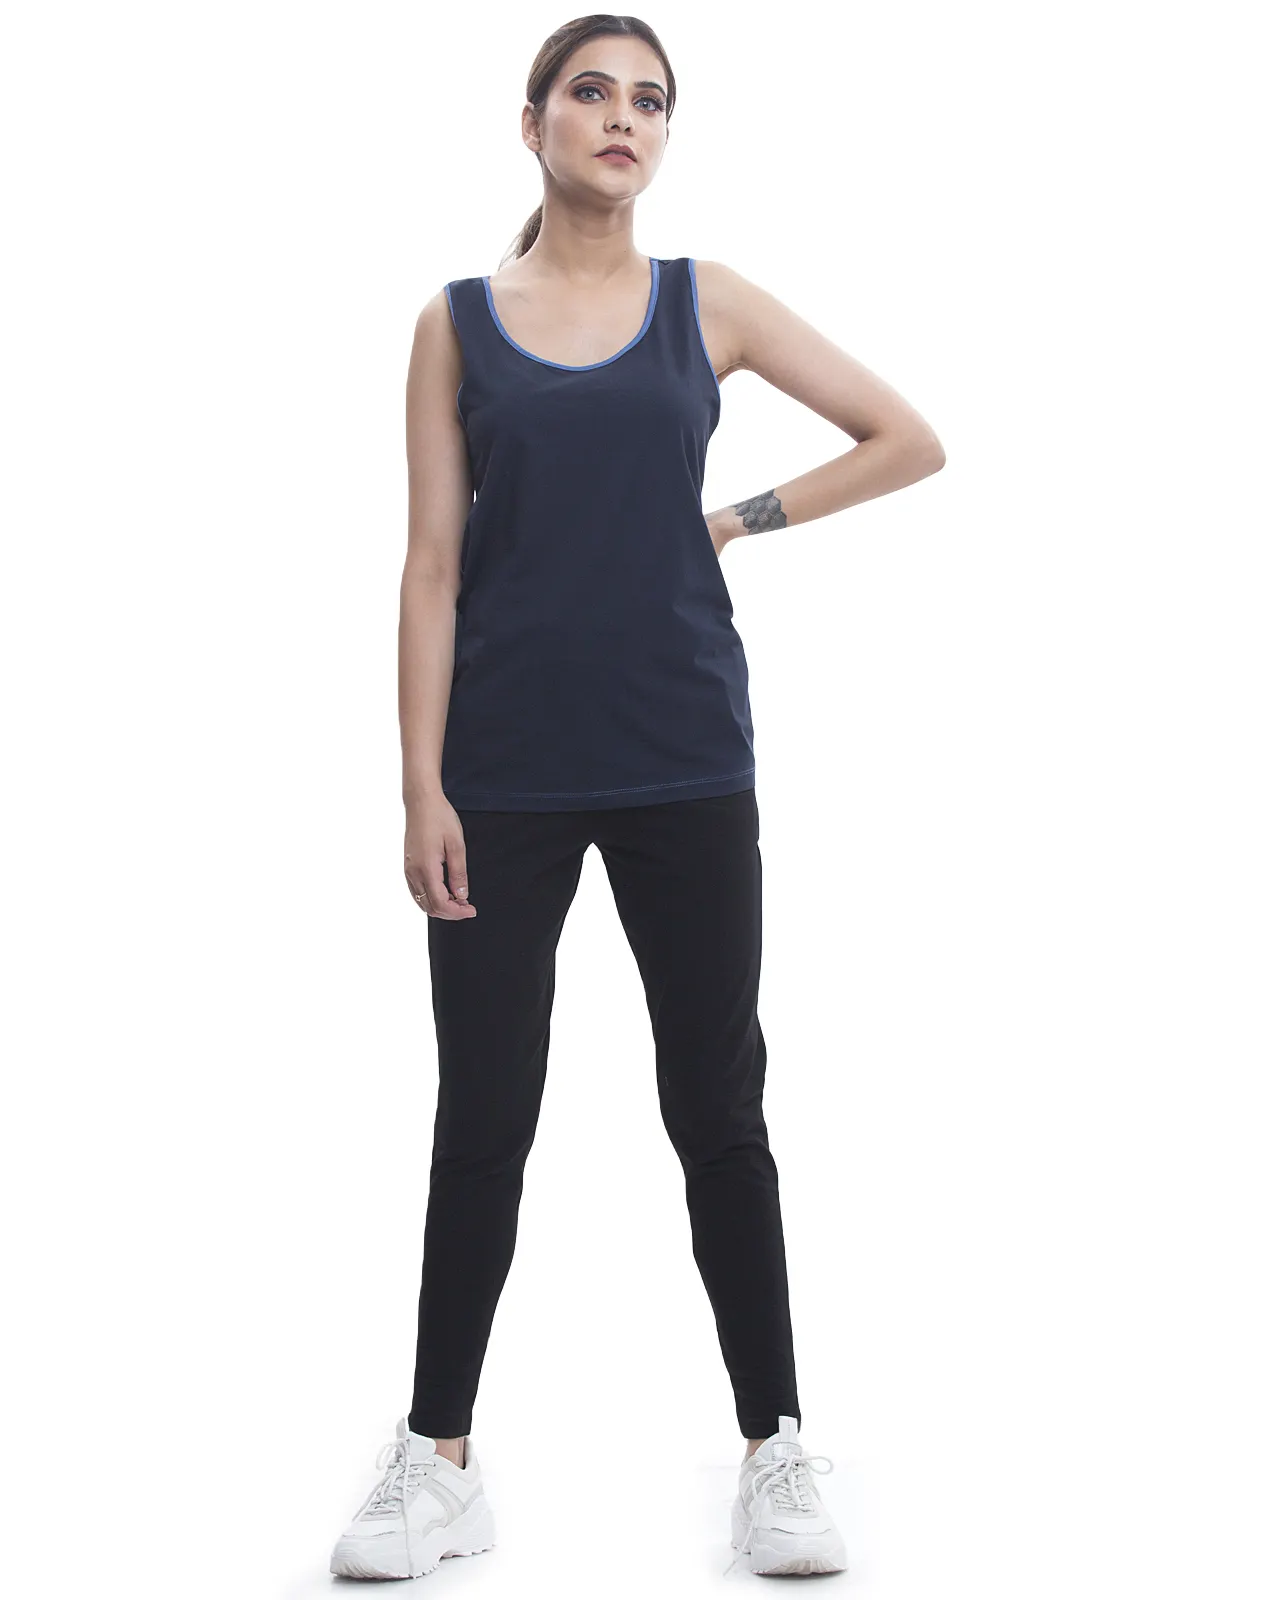 Kaliteli organik pamuk örgü kumaş rahat kolsuz Yoga üst çift renkler açık ve lacivert kadınlar için t-shirt